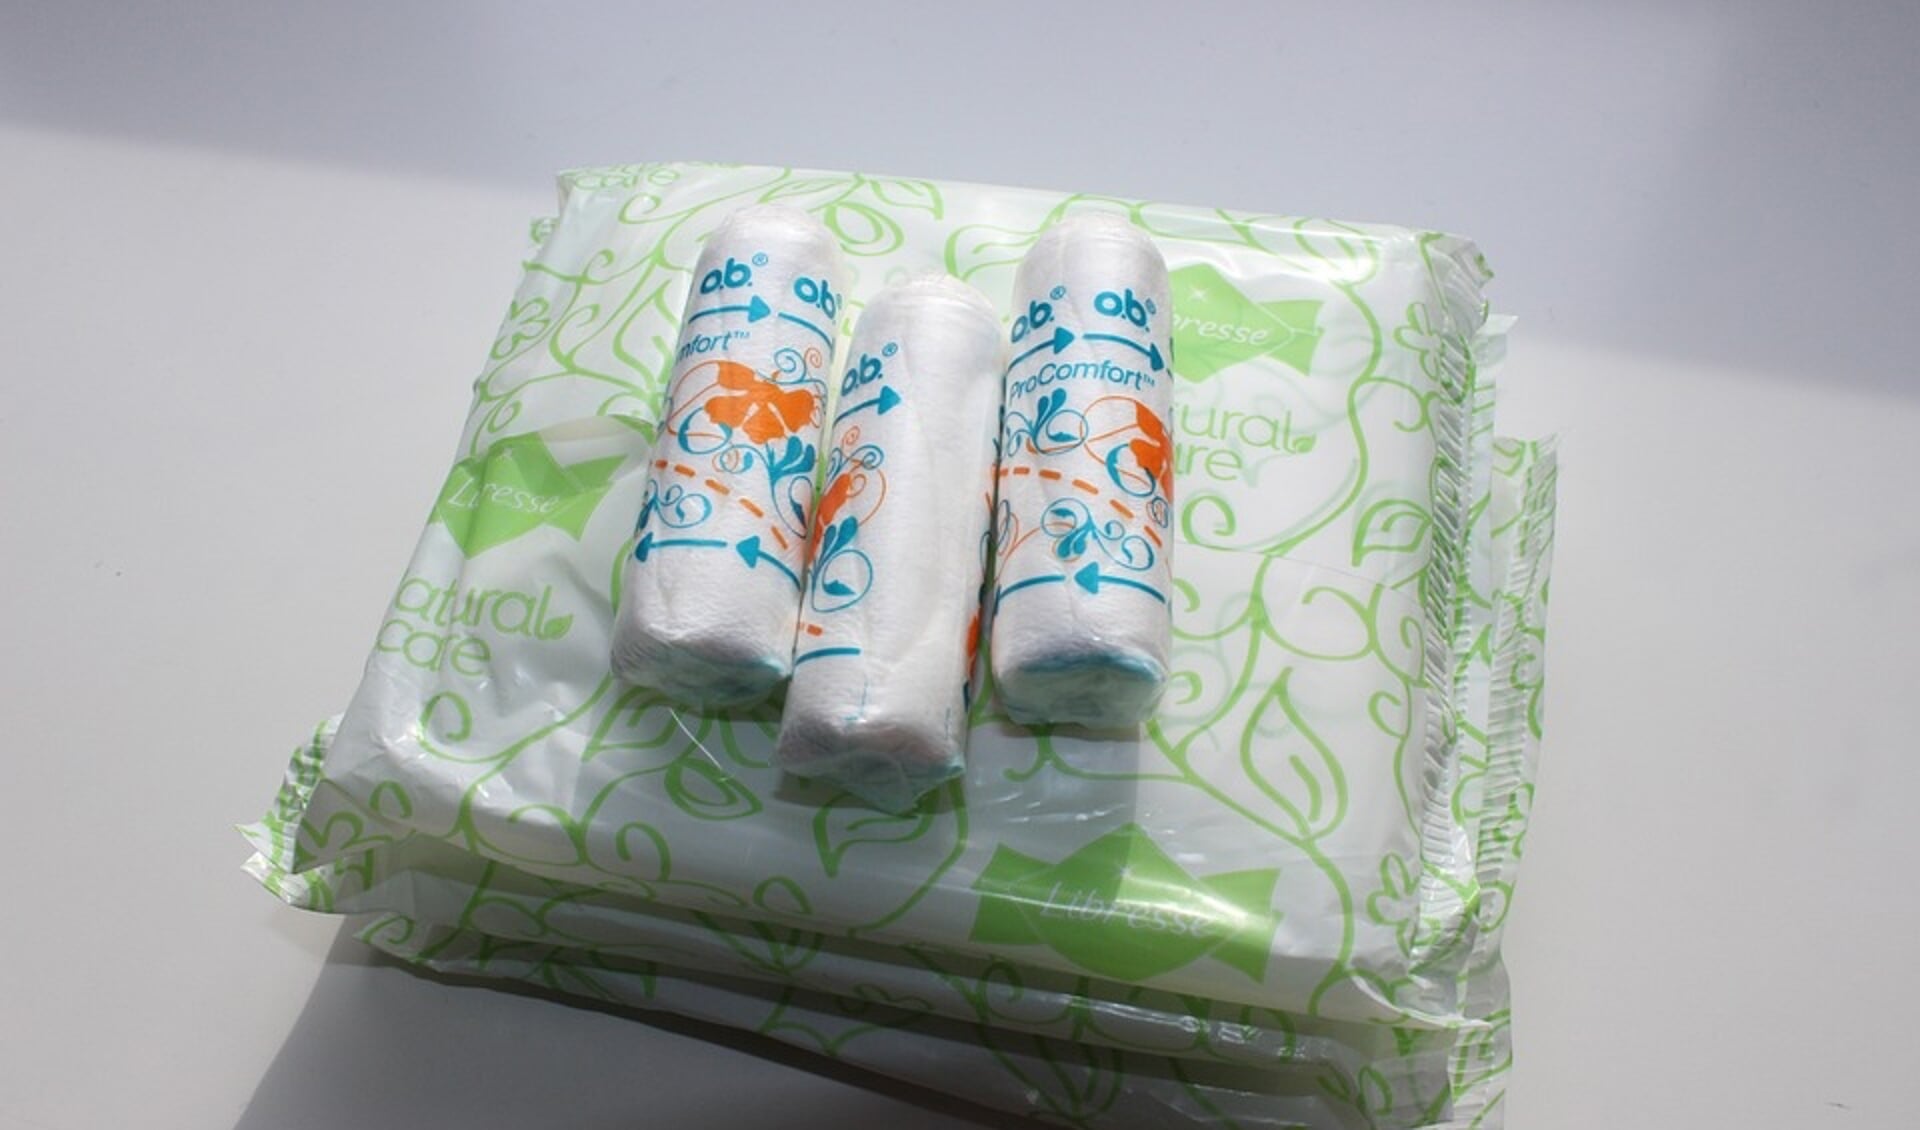 Uit onderzoek blijkt dat gemiddeld 1 op de 10 meisjes en vrouwen niet iedere maand tampons of maandverband kan kopen.